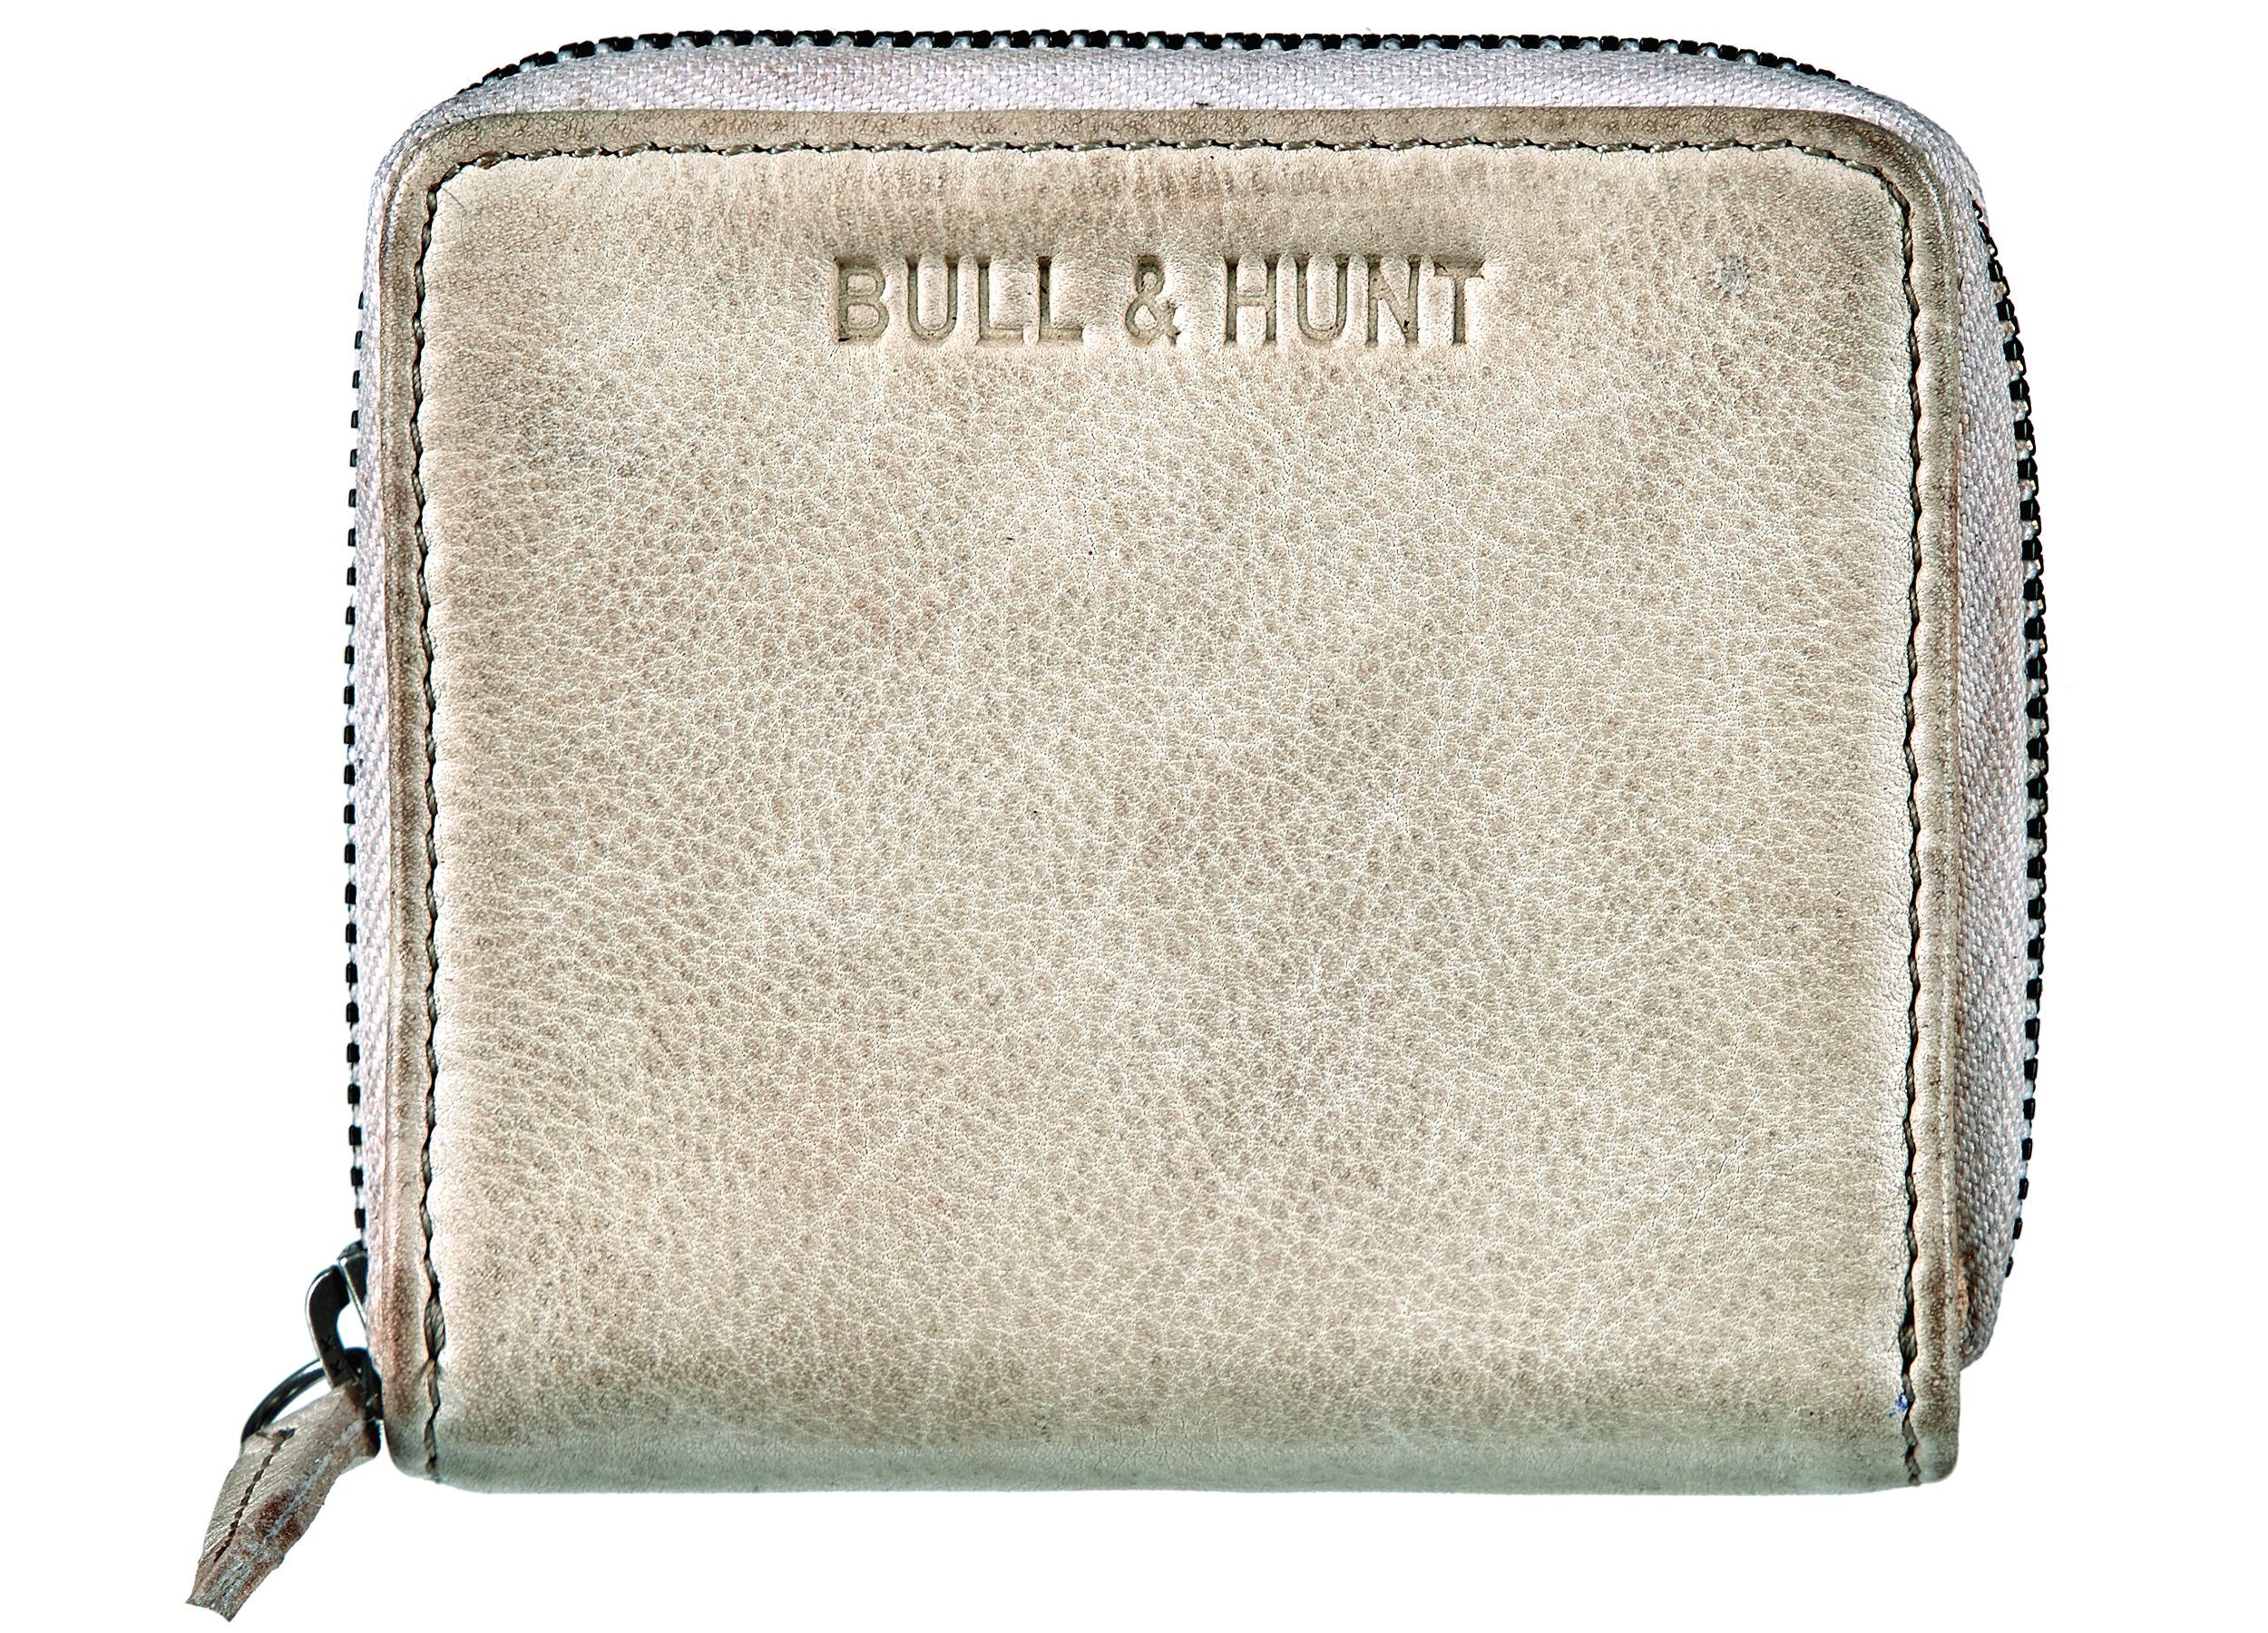 Bull & Hunt Mini Geldbörse mini zip wallet stone